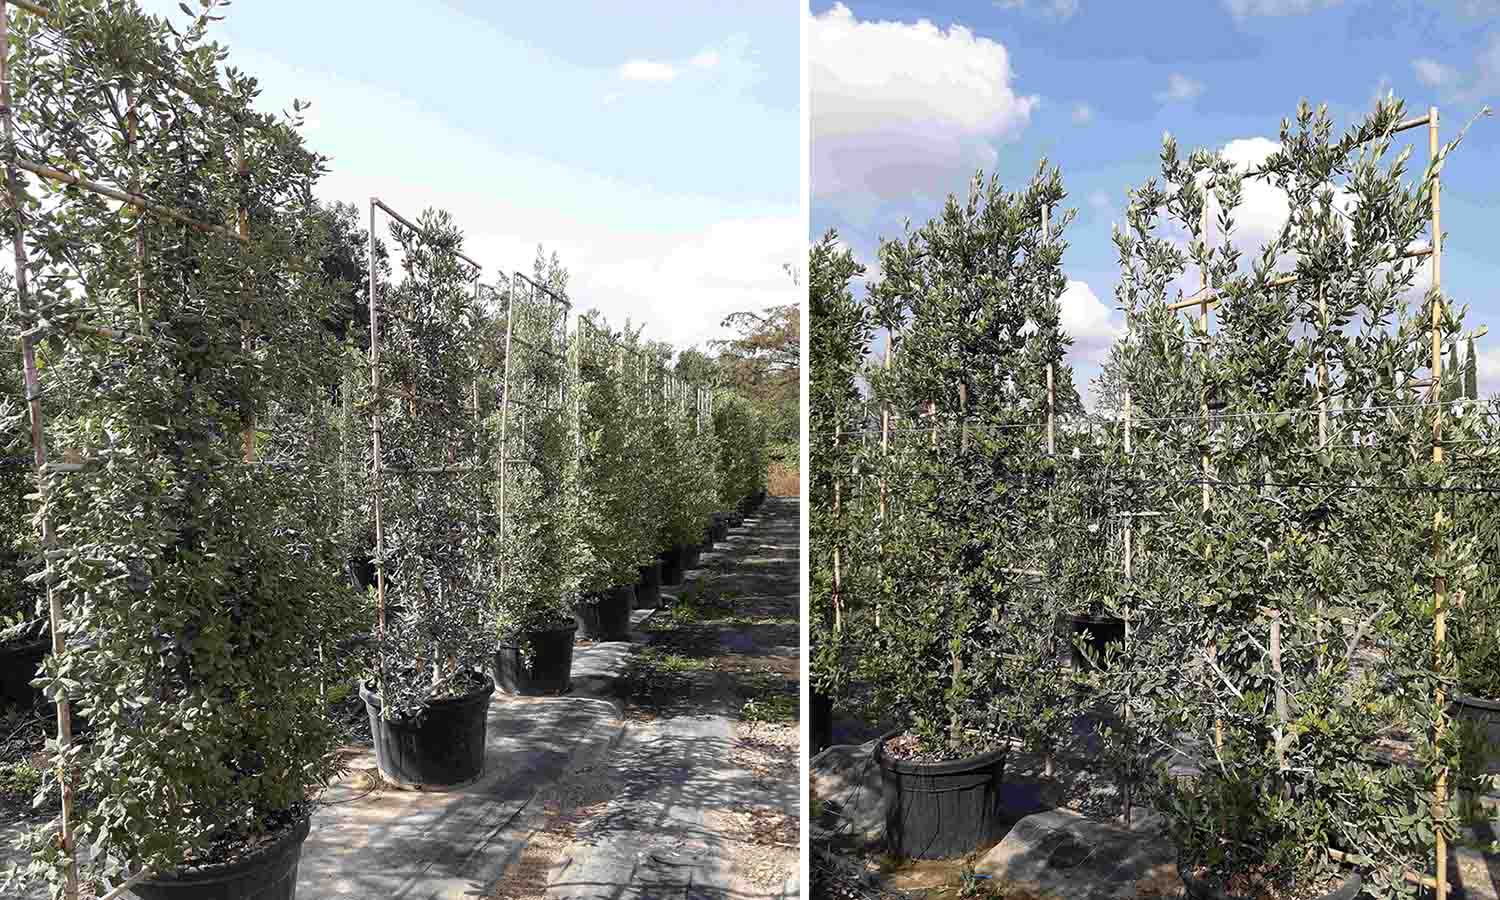 Quercus Ilex (Holm Oak / Evergreen Oak) - Espalier